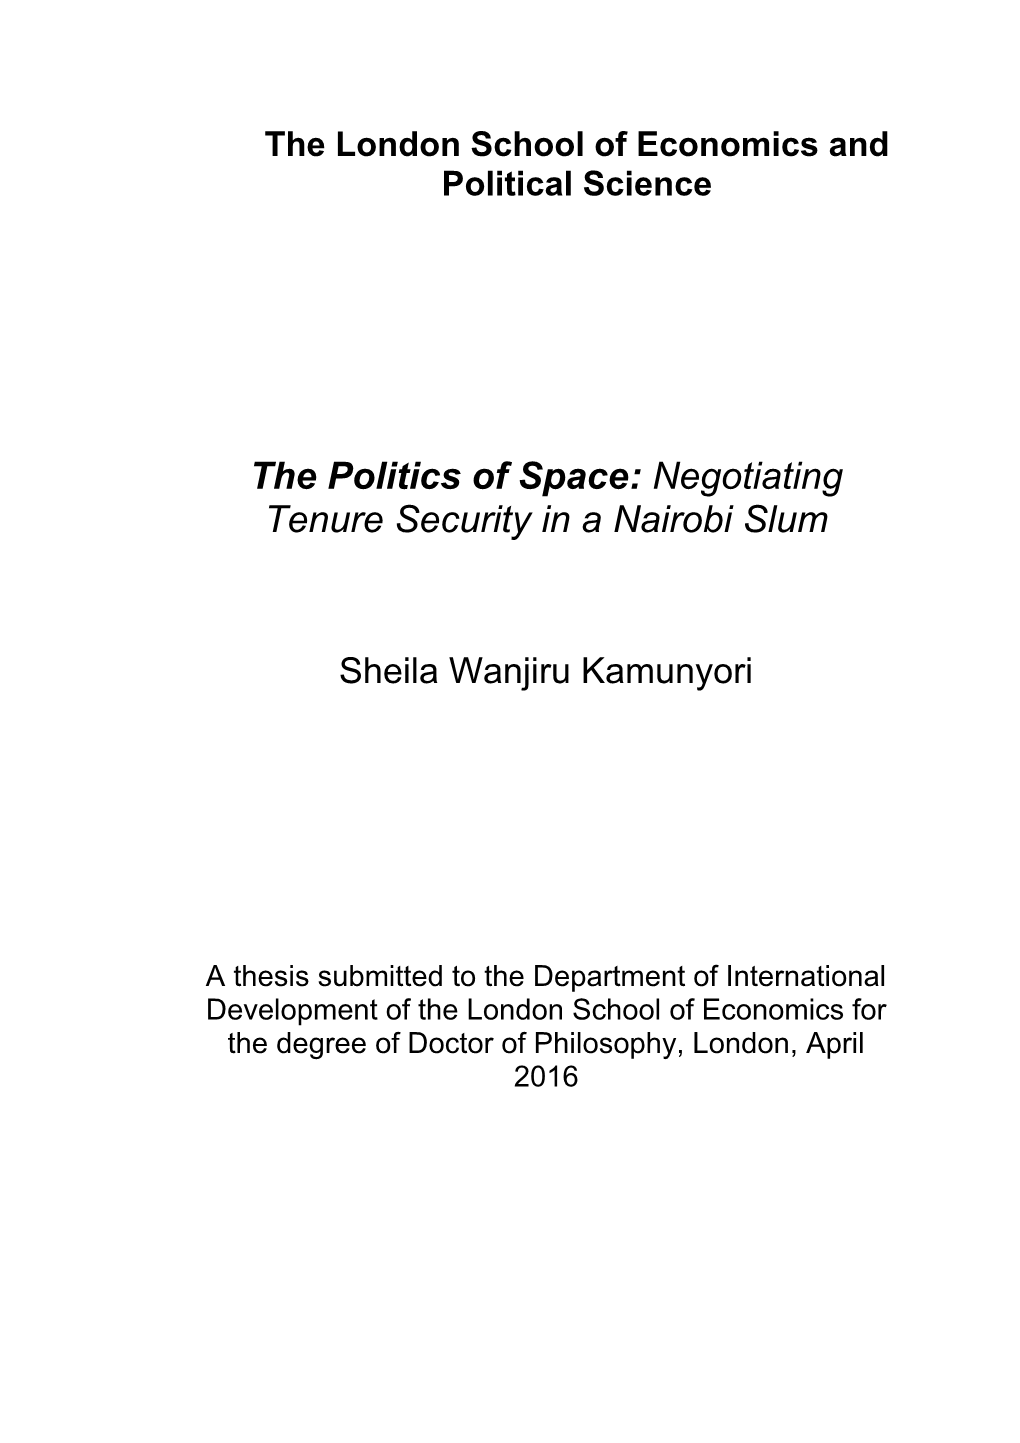 The Politics of Space: Negotiating Tenure Security in a Nairobi Slum